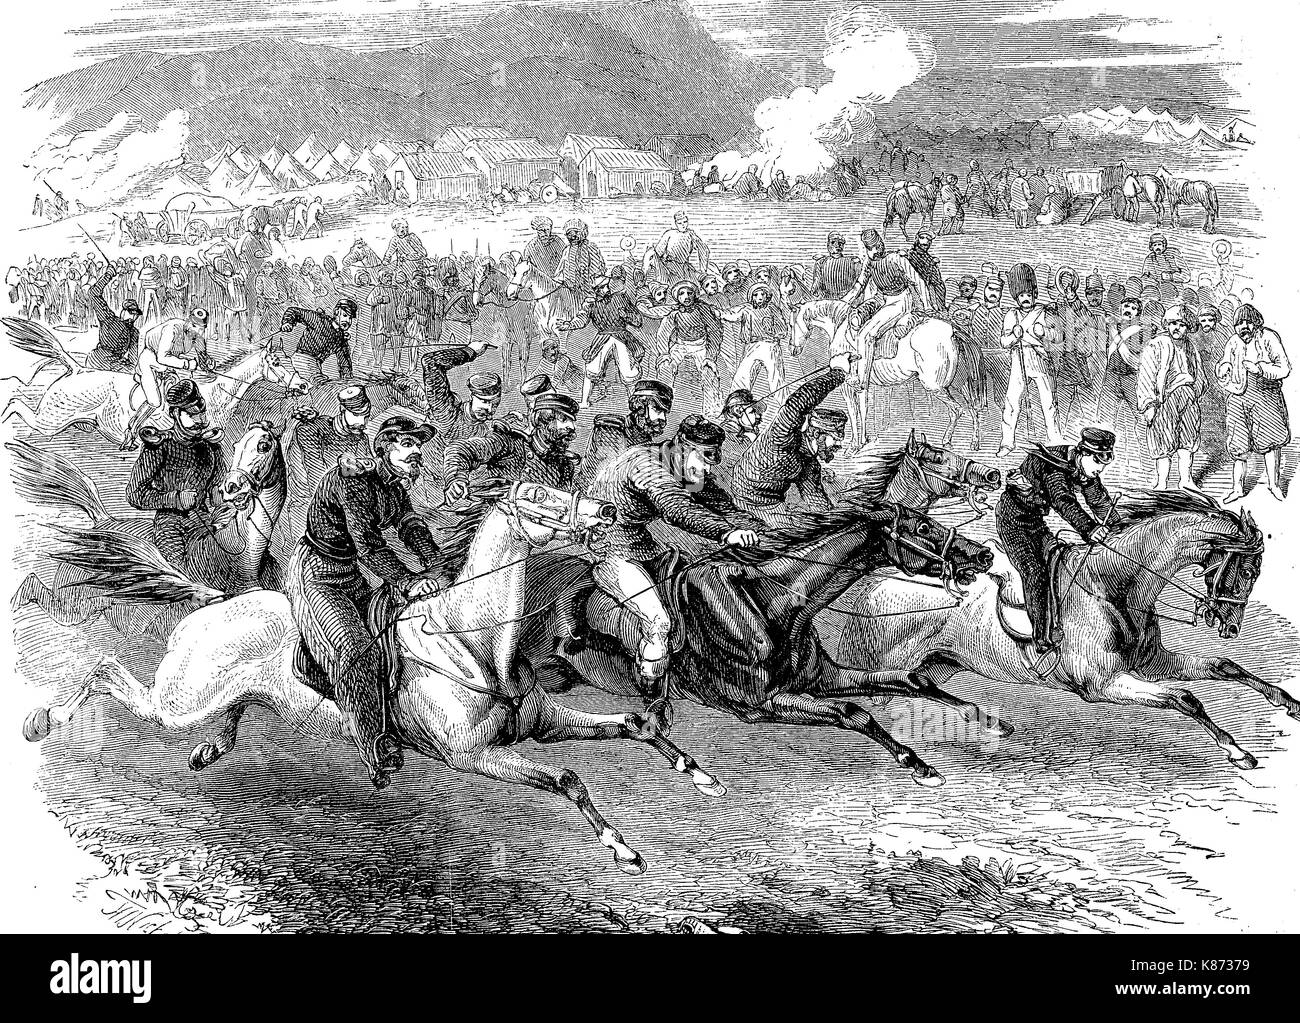 Reiter spiele die Soldaten im Englischen Lager von Sewastopol, Krim Krieg, 1855 abzulenken, Digital verbesserte Reproduktion einer Vorlage woodprint aus dem 19. Jahrhundert Stockfoto